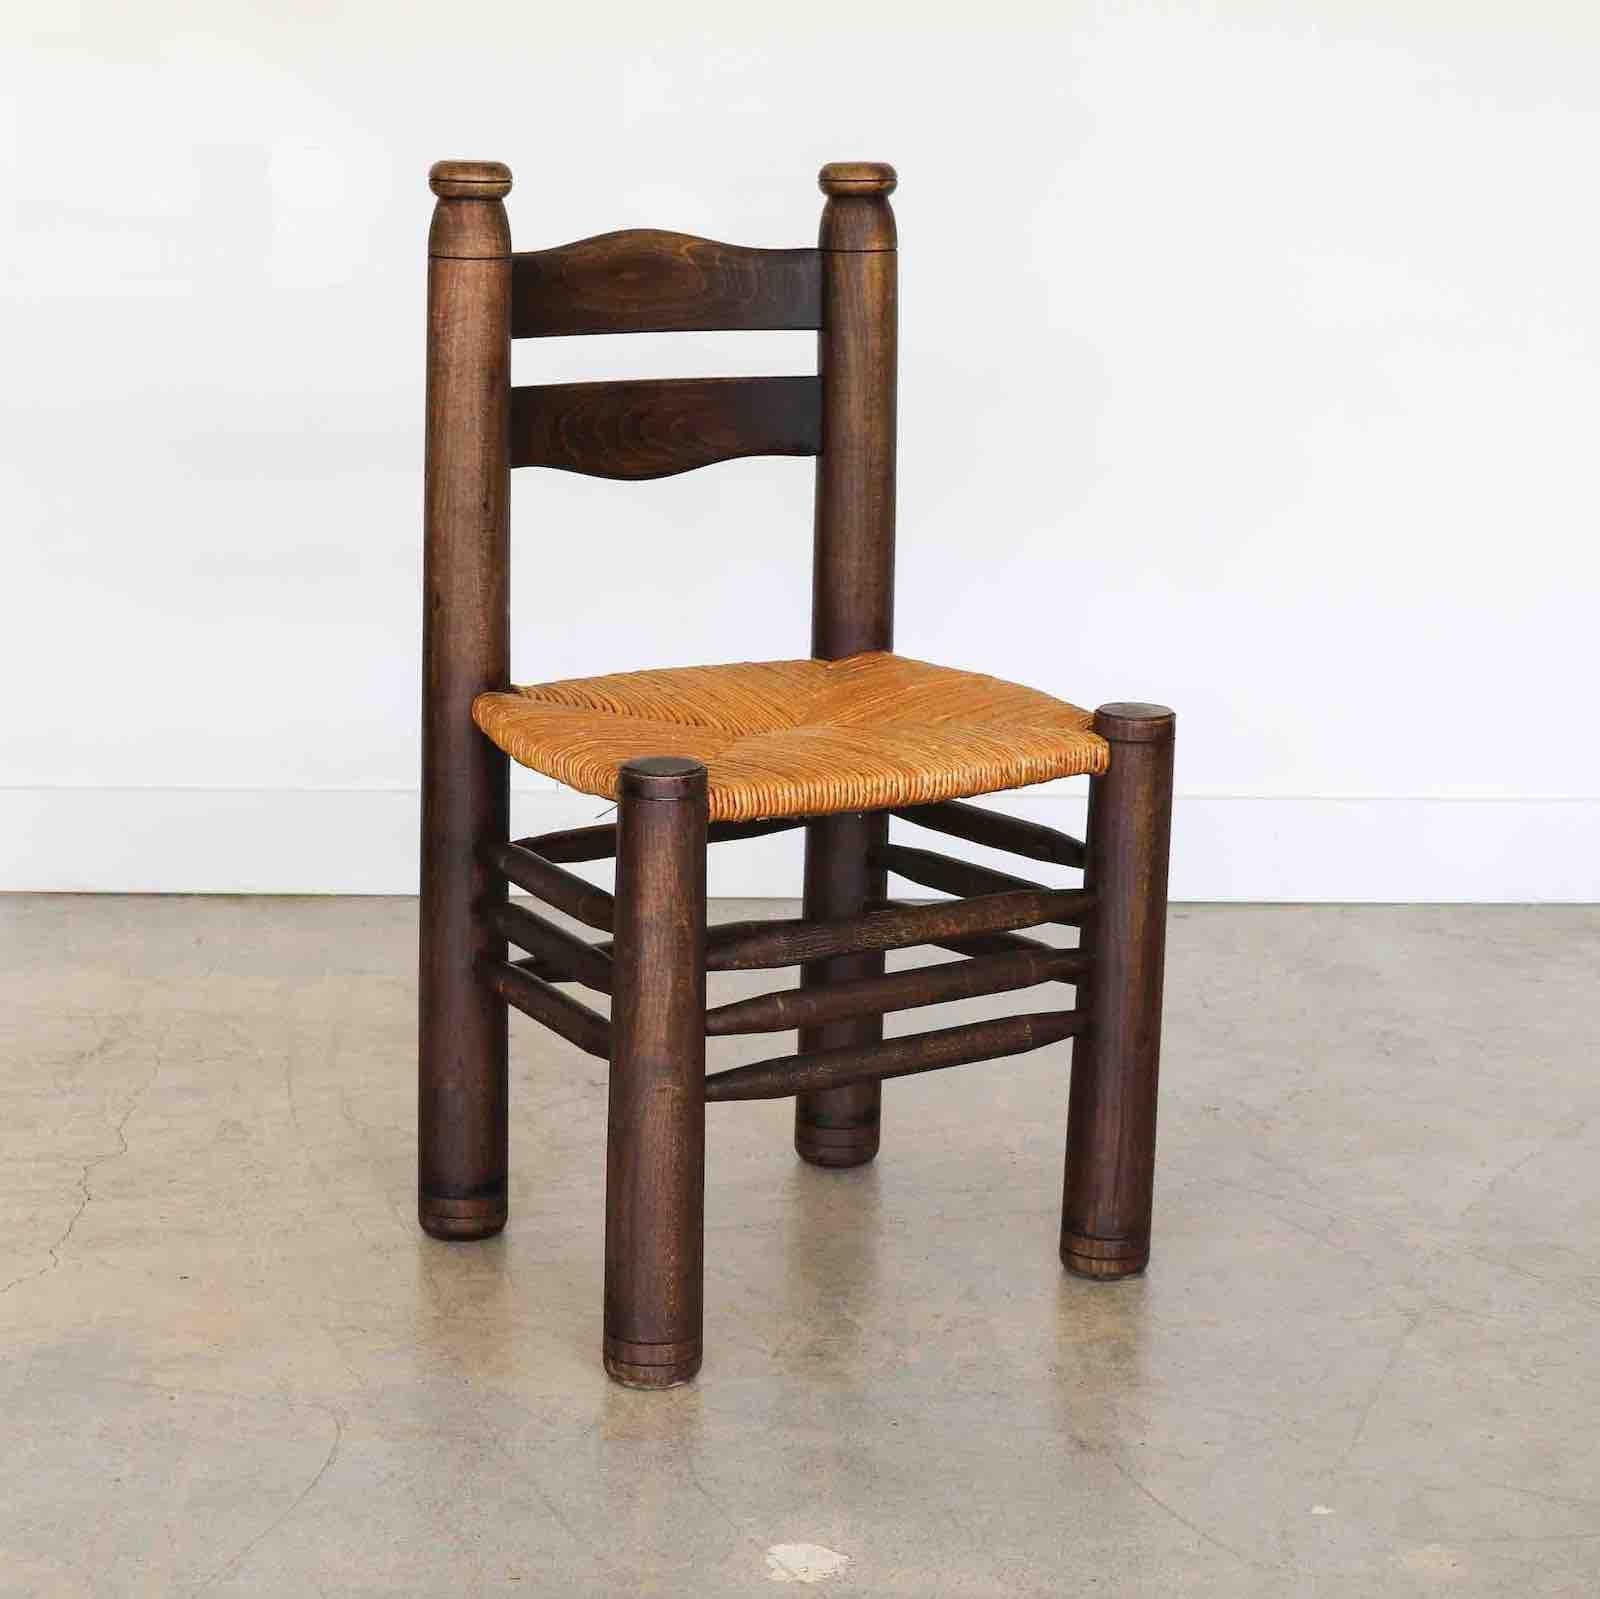 Incroyable chaise en bois et tressage de Charles Dudouyt en France dans les années 1940. Pieds fuselés solides et épais avec un magnifique dossier en bois sculpté et ondulé. Siège en jonc tissé d'origine. La teinture d'origine du bois foncé est en